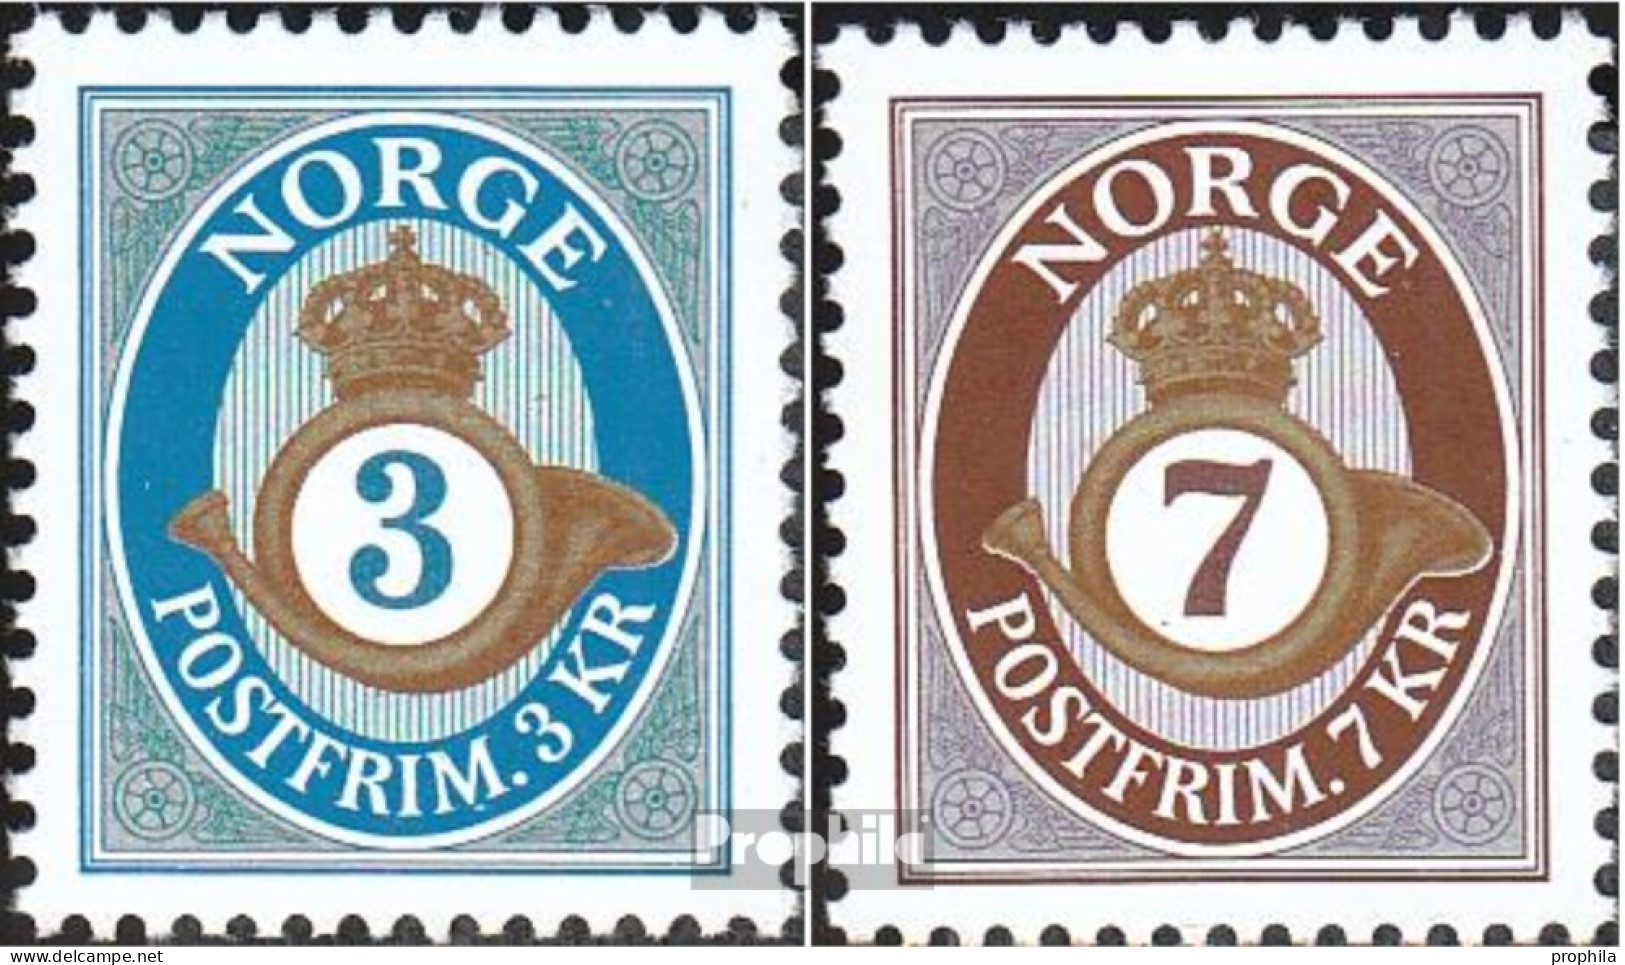 Norwegen 1529-1530 (kompl.Ausg.) Postfrisch 2005 Posthorn - Nuovi